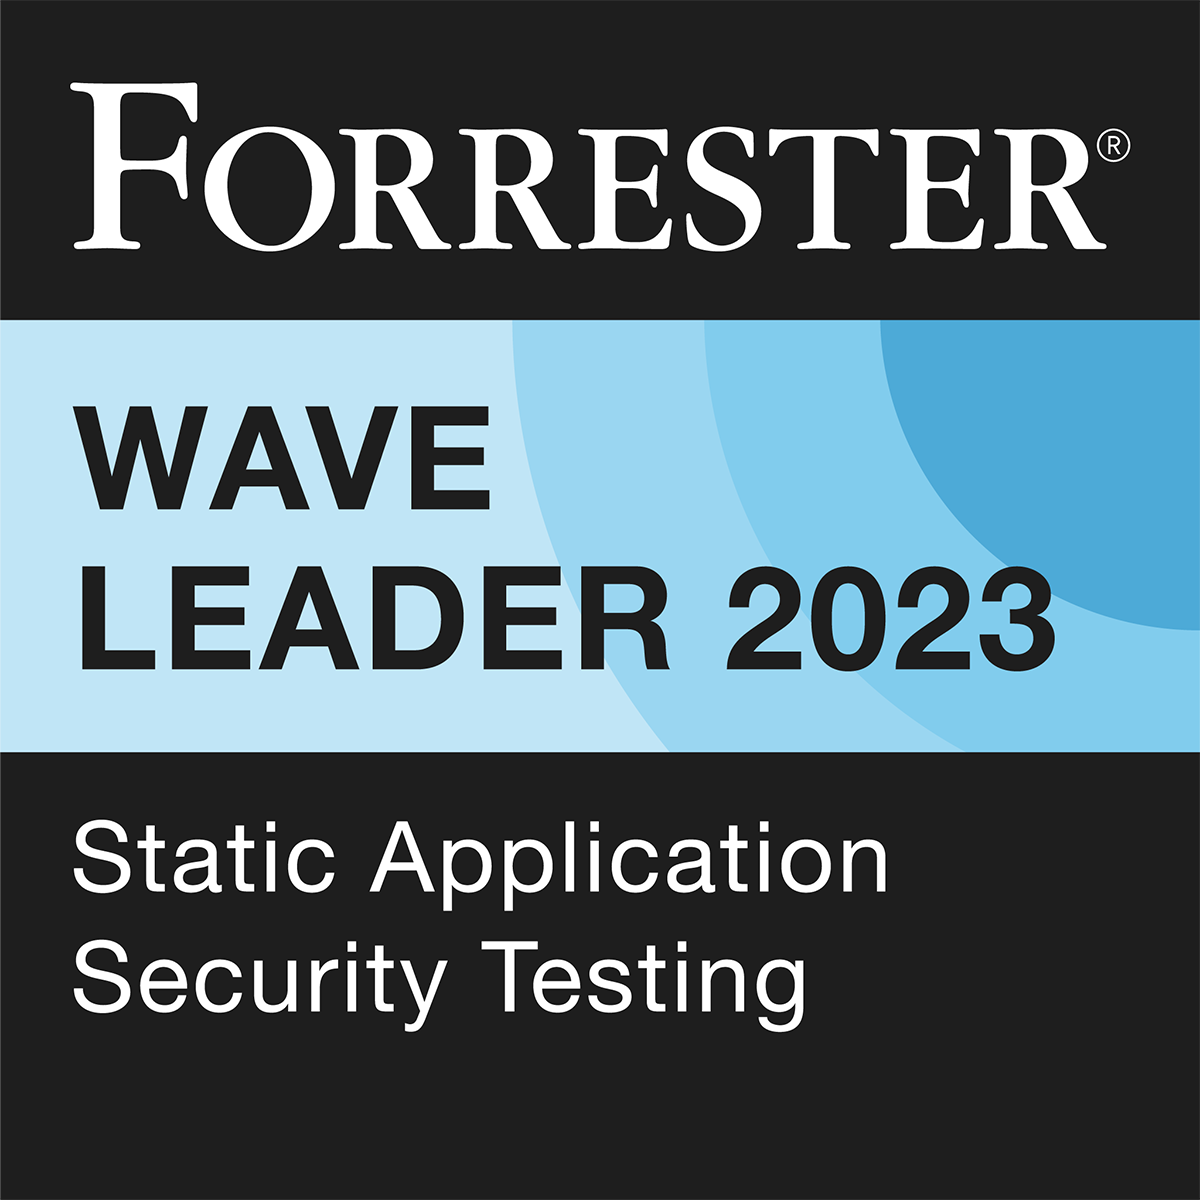 Forrester Wave Leader for SAST